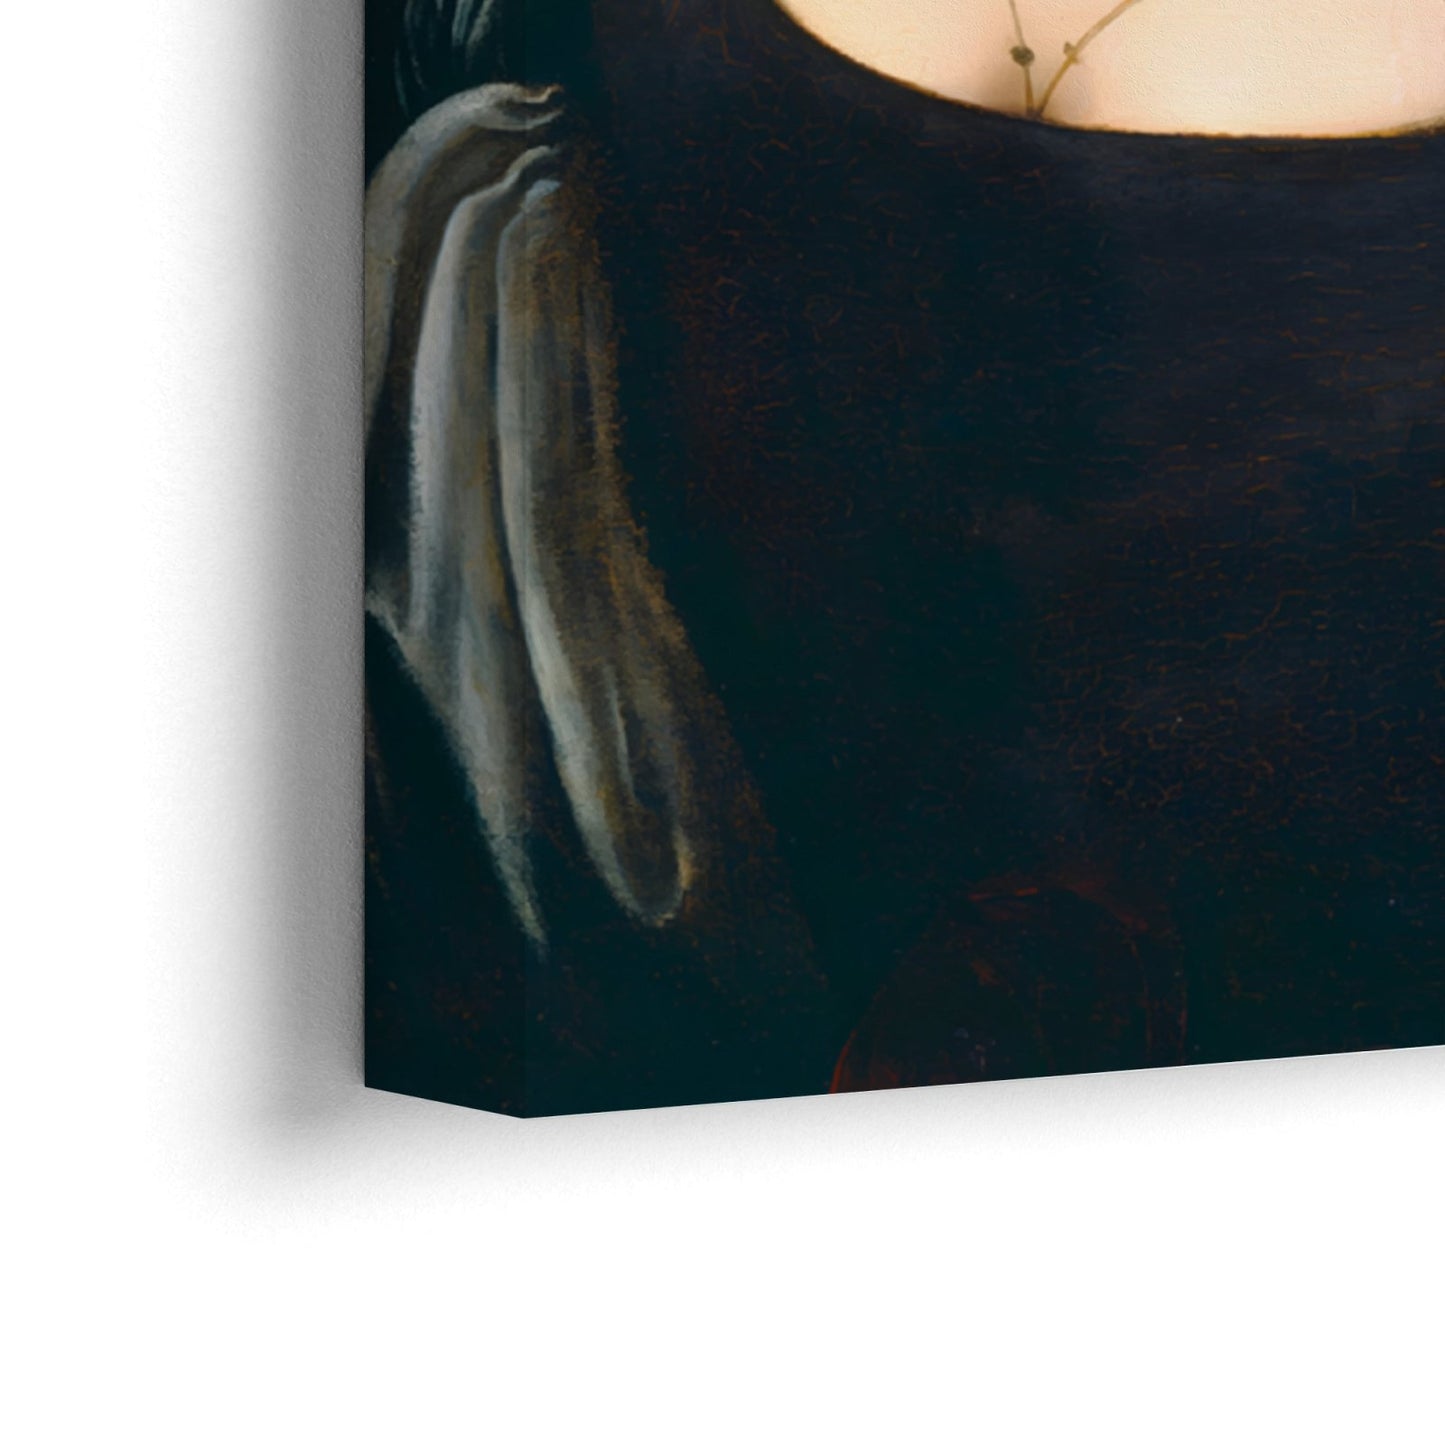 Porträt einer jungen Frau, Leonardo Da Vinci